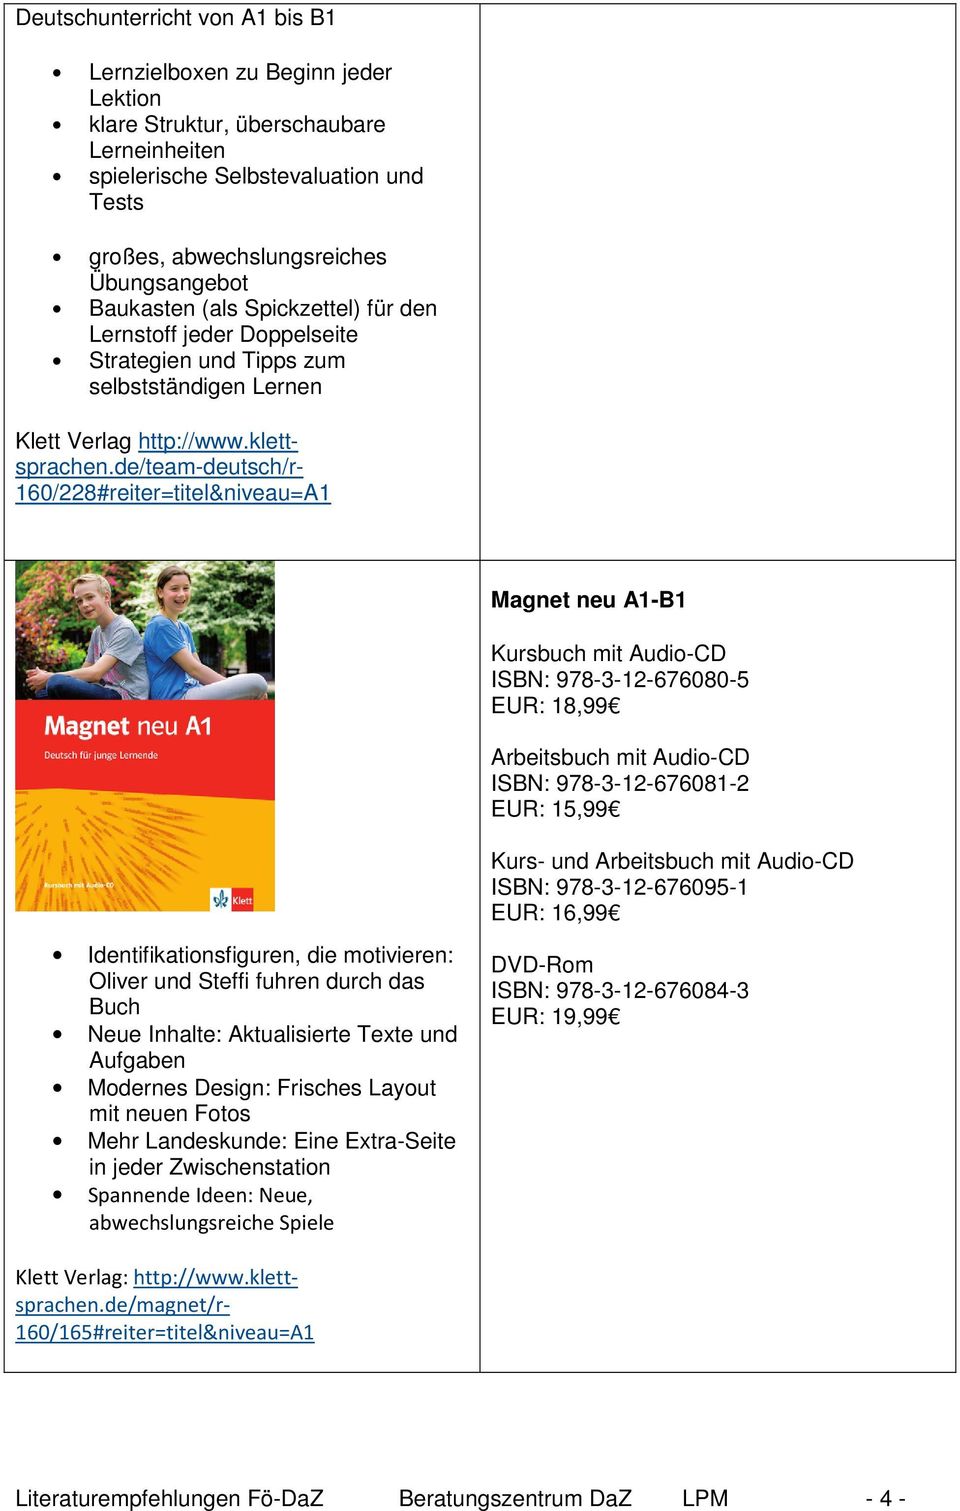 de/team-deutsch/r- 160/228#reiter=titel&niveau=A1 Magnet neu A1-B1 Kursbuch mit Audio-CD ISBN: 978-3-12-676080-5 EUR: 18,99 Arbeitsbuch mit Audio-CD ISBN: 978-3-12-676081-2 EUR: 15,99 Kurs- und